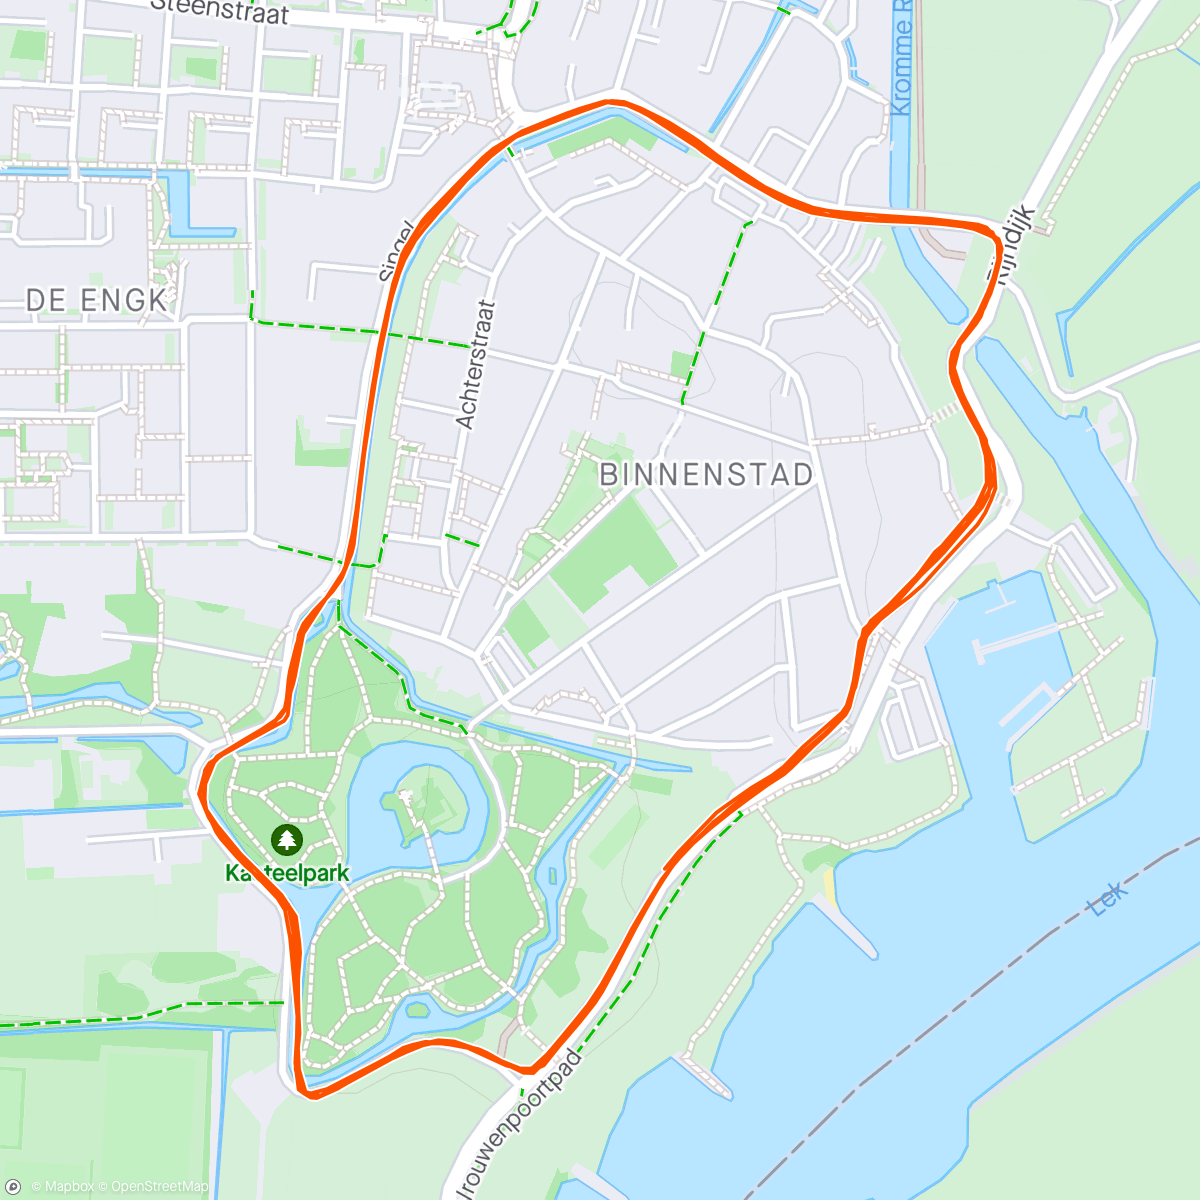 「Singelloop Wijk bij Duurstede (10 km)」活動的地圖